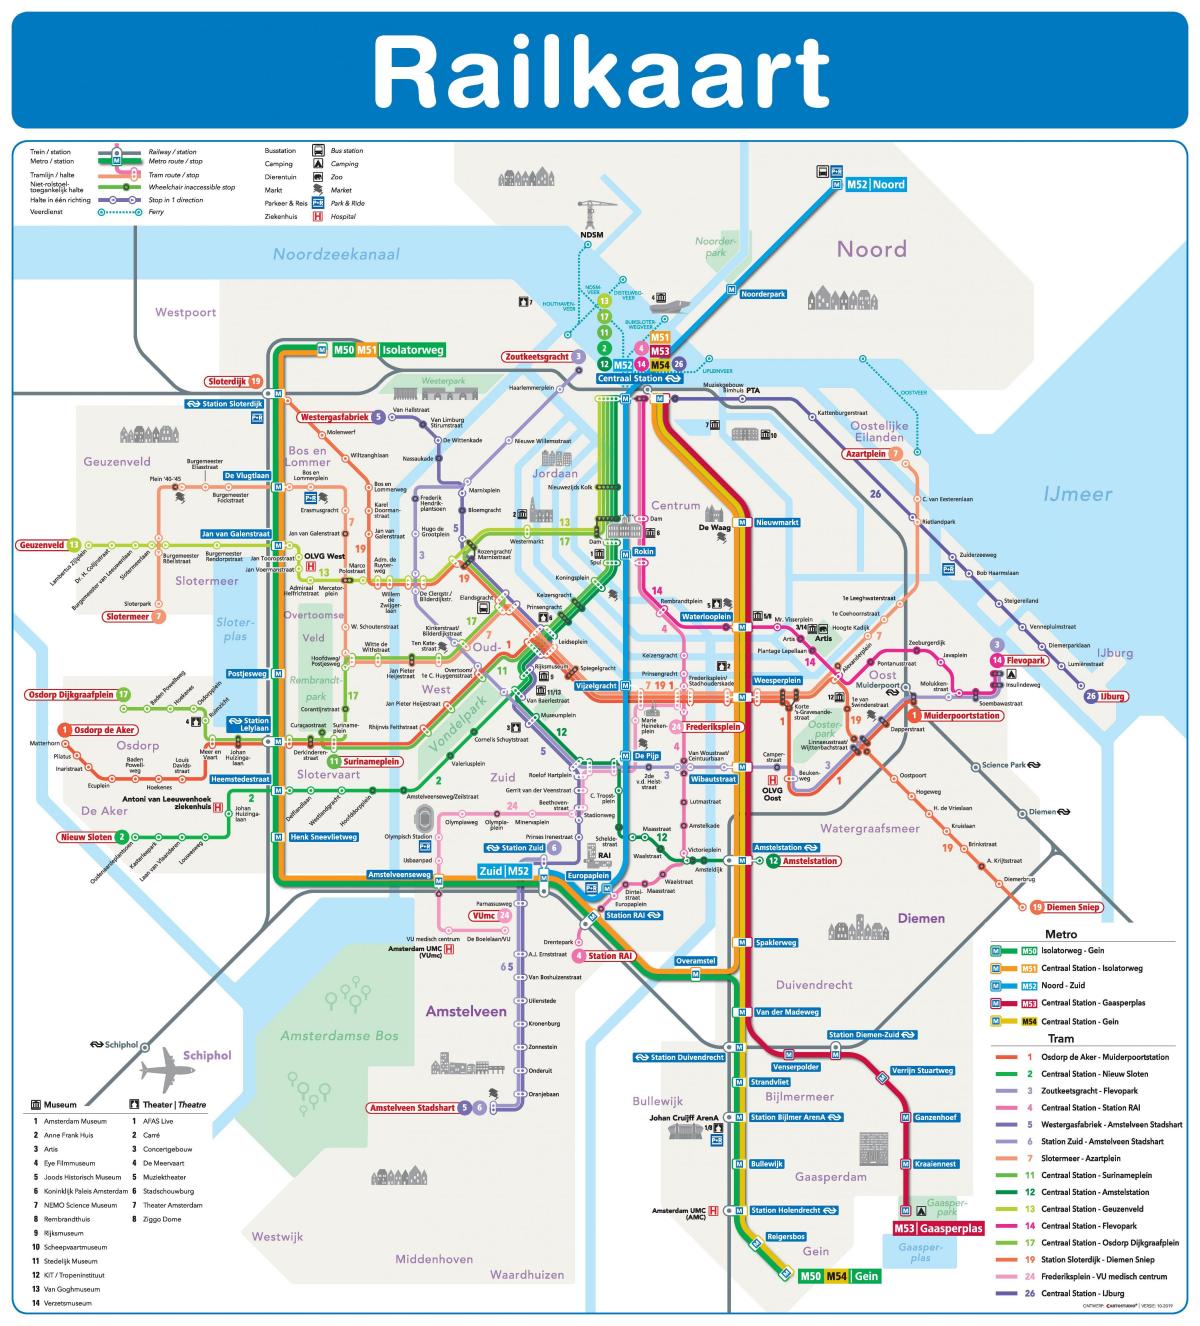 阿姆斯特丹火车系统的地图